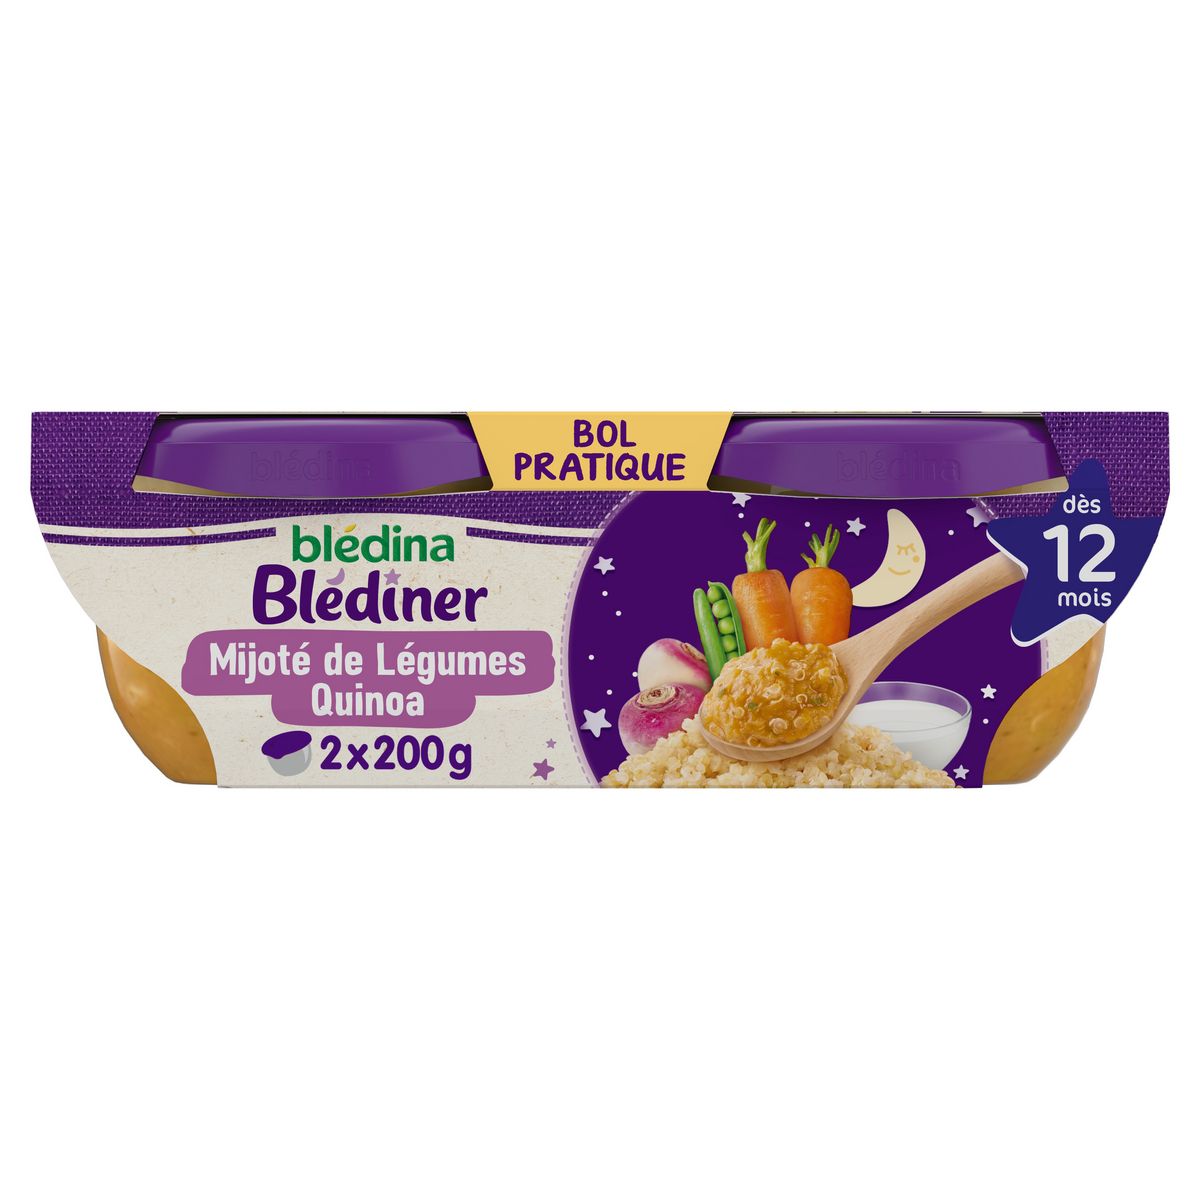 BLEDINA Blédiner bol mijoté de légumes et quinoa dès 12 mois 2x200g